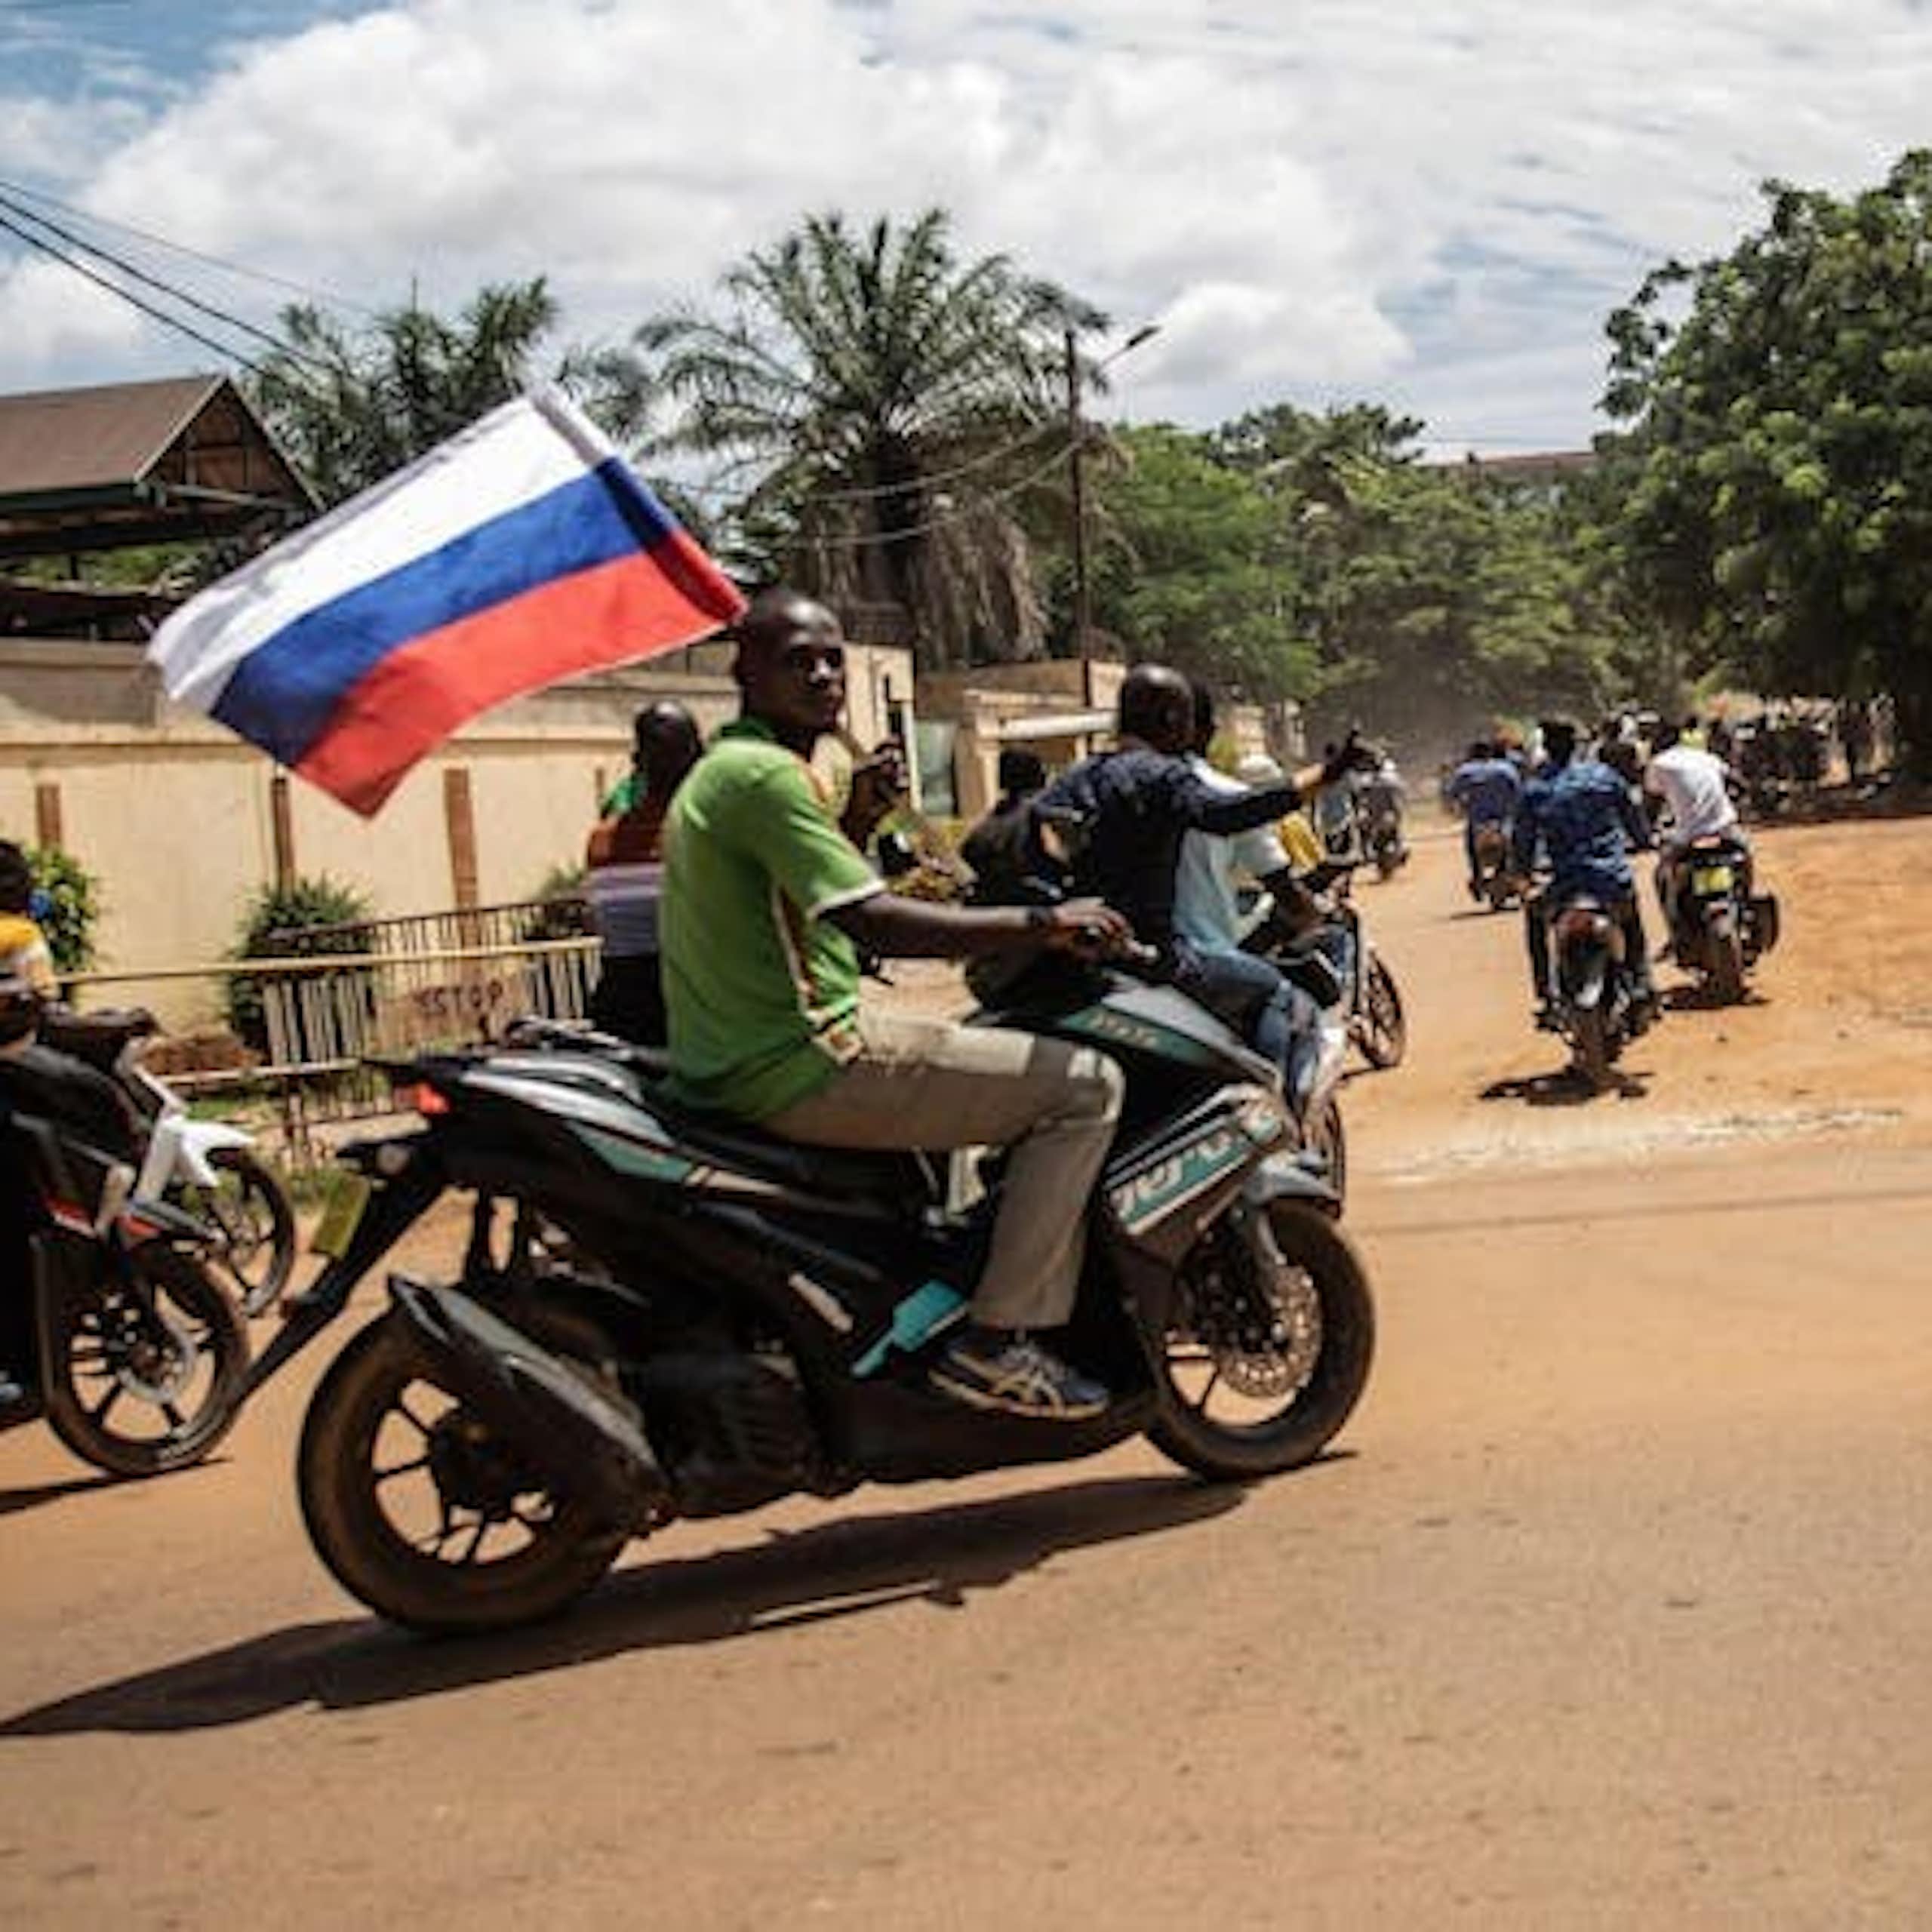 La Russie a renforcé son emprise sur la région du Sahel et s'intéresse désormais à la côte ouest de l'Afrique